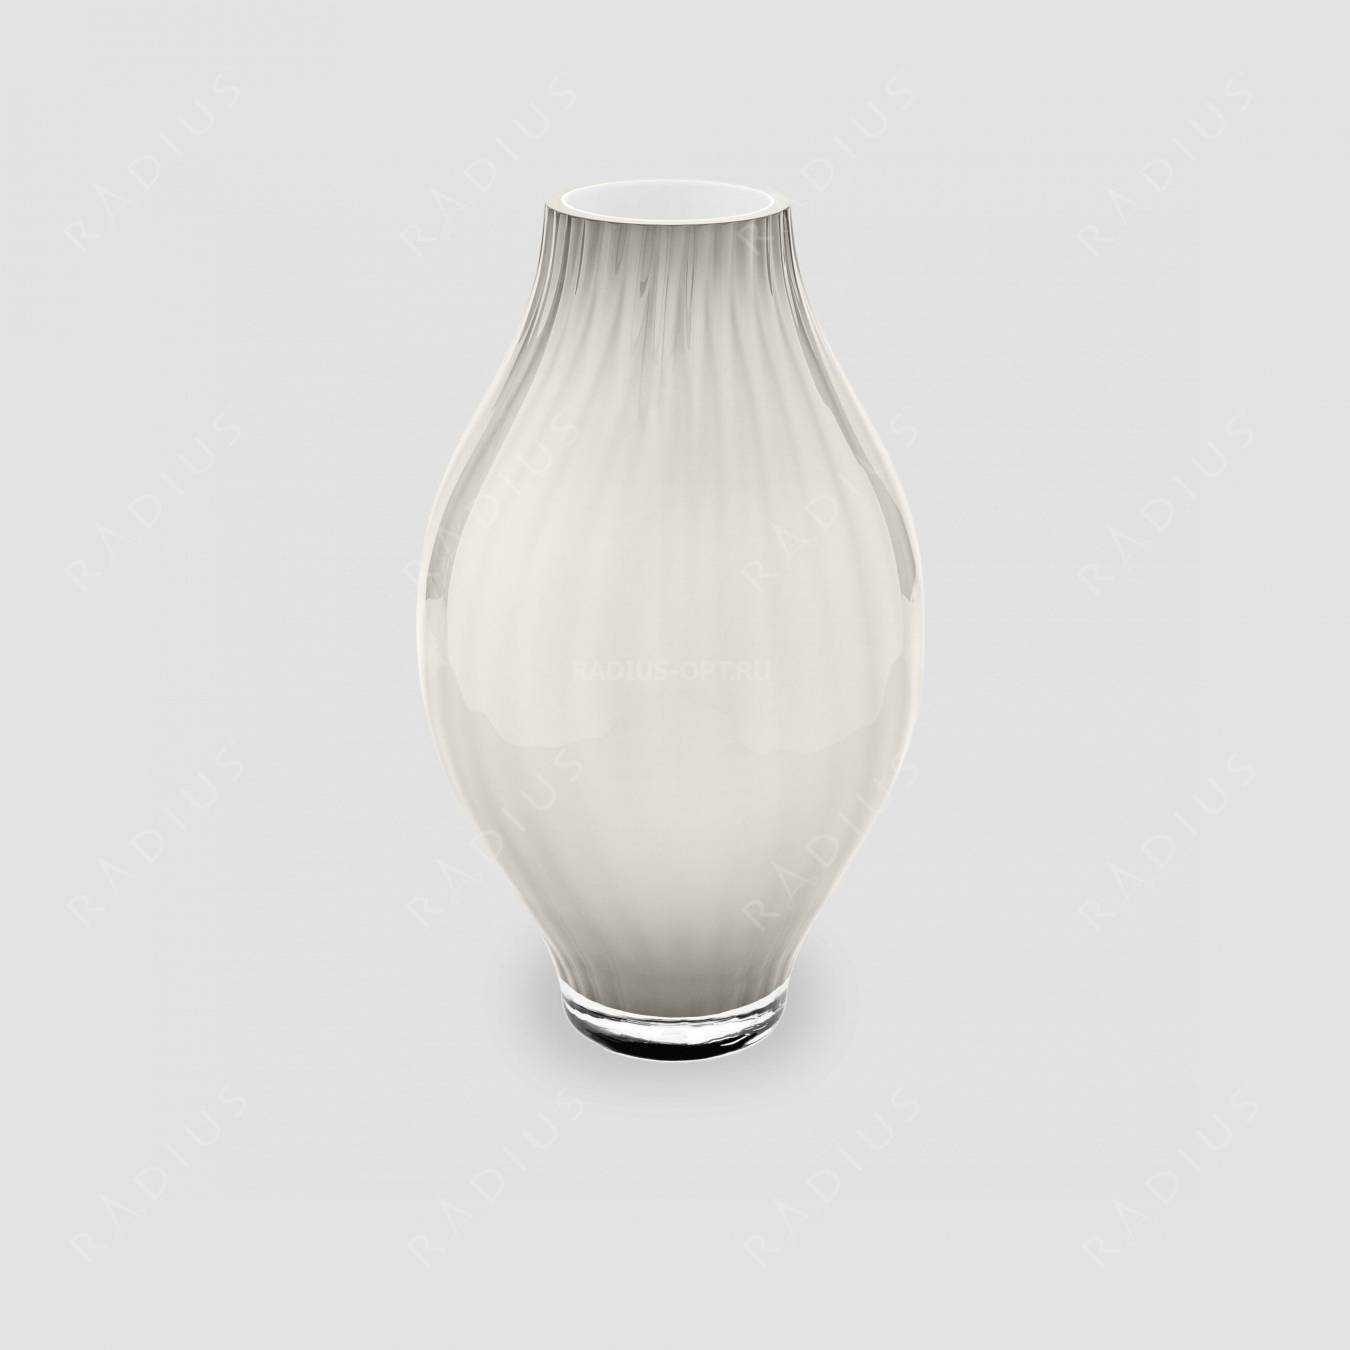 Стеклянная ваза для цветов, высота: 34 см, материал: стекло, цвет: белый, серия Arianna, IVV (Italy), Италия